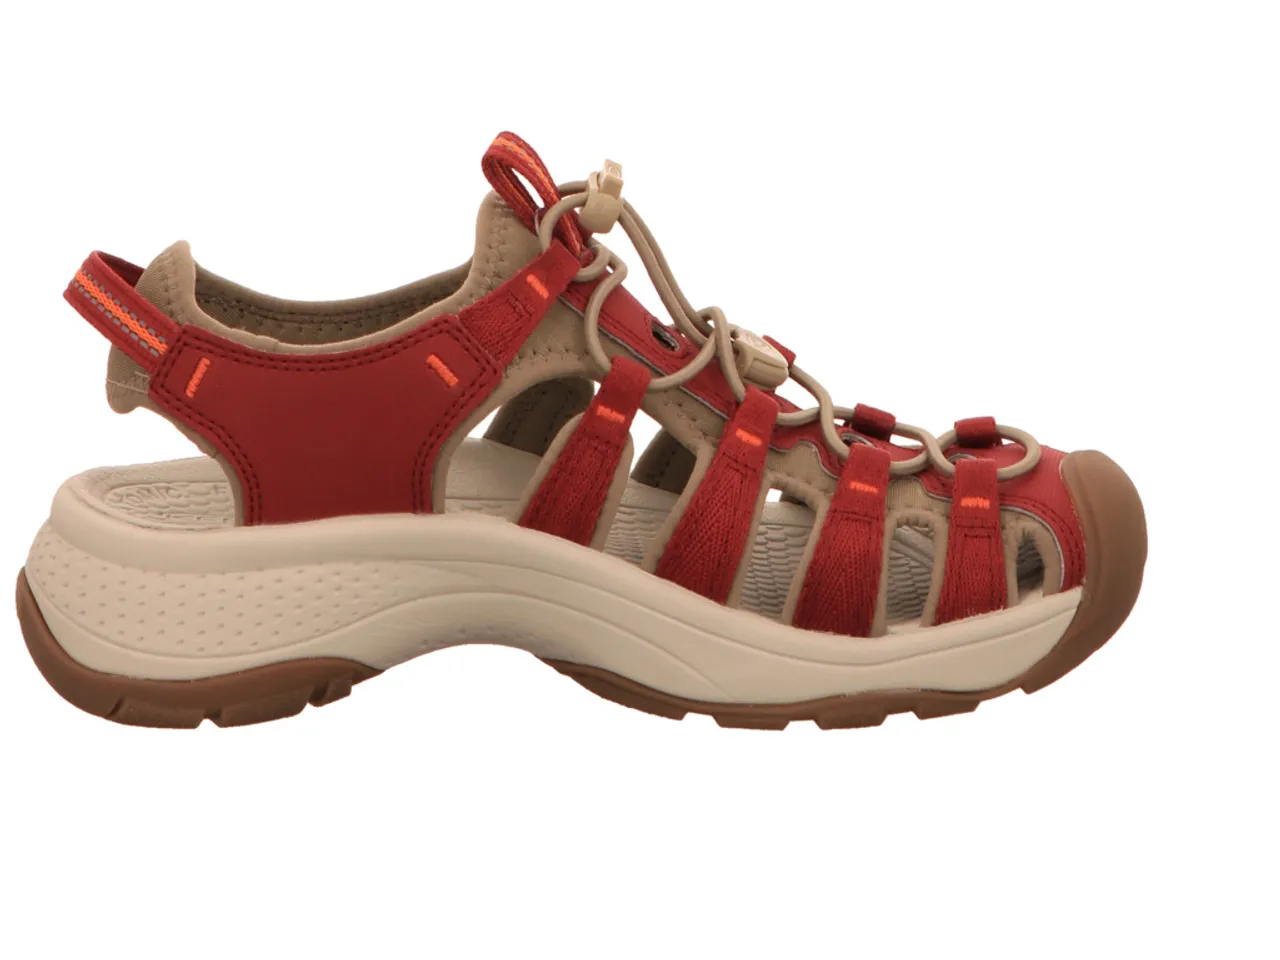 Klassische Sandalen rot